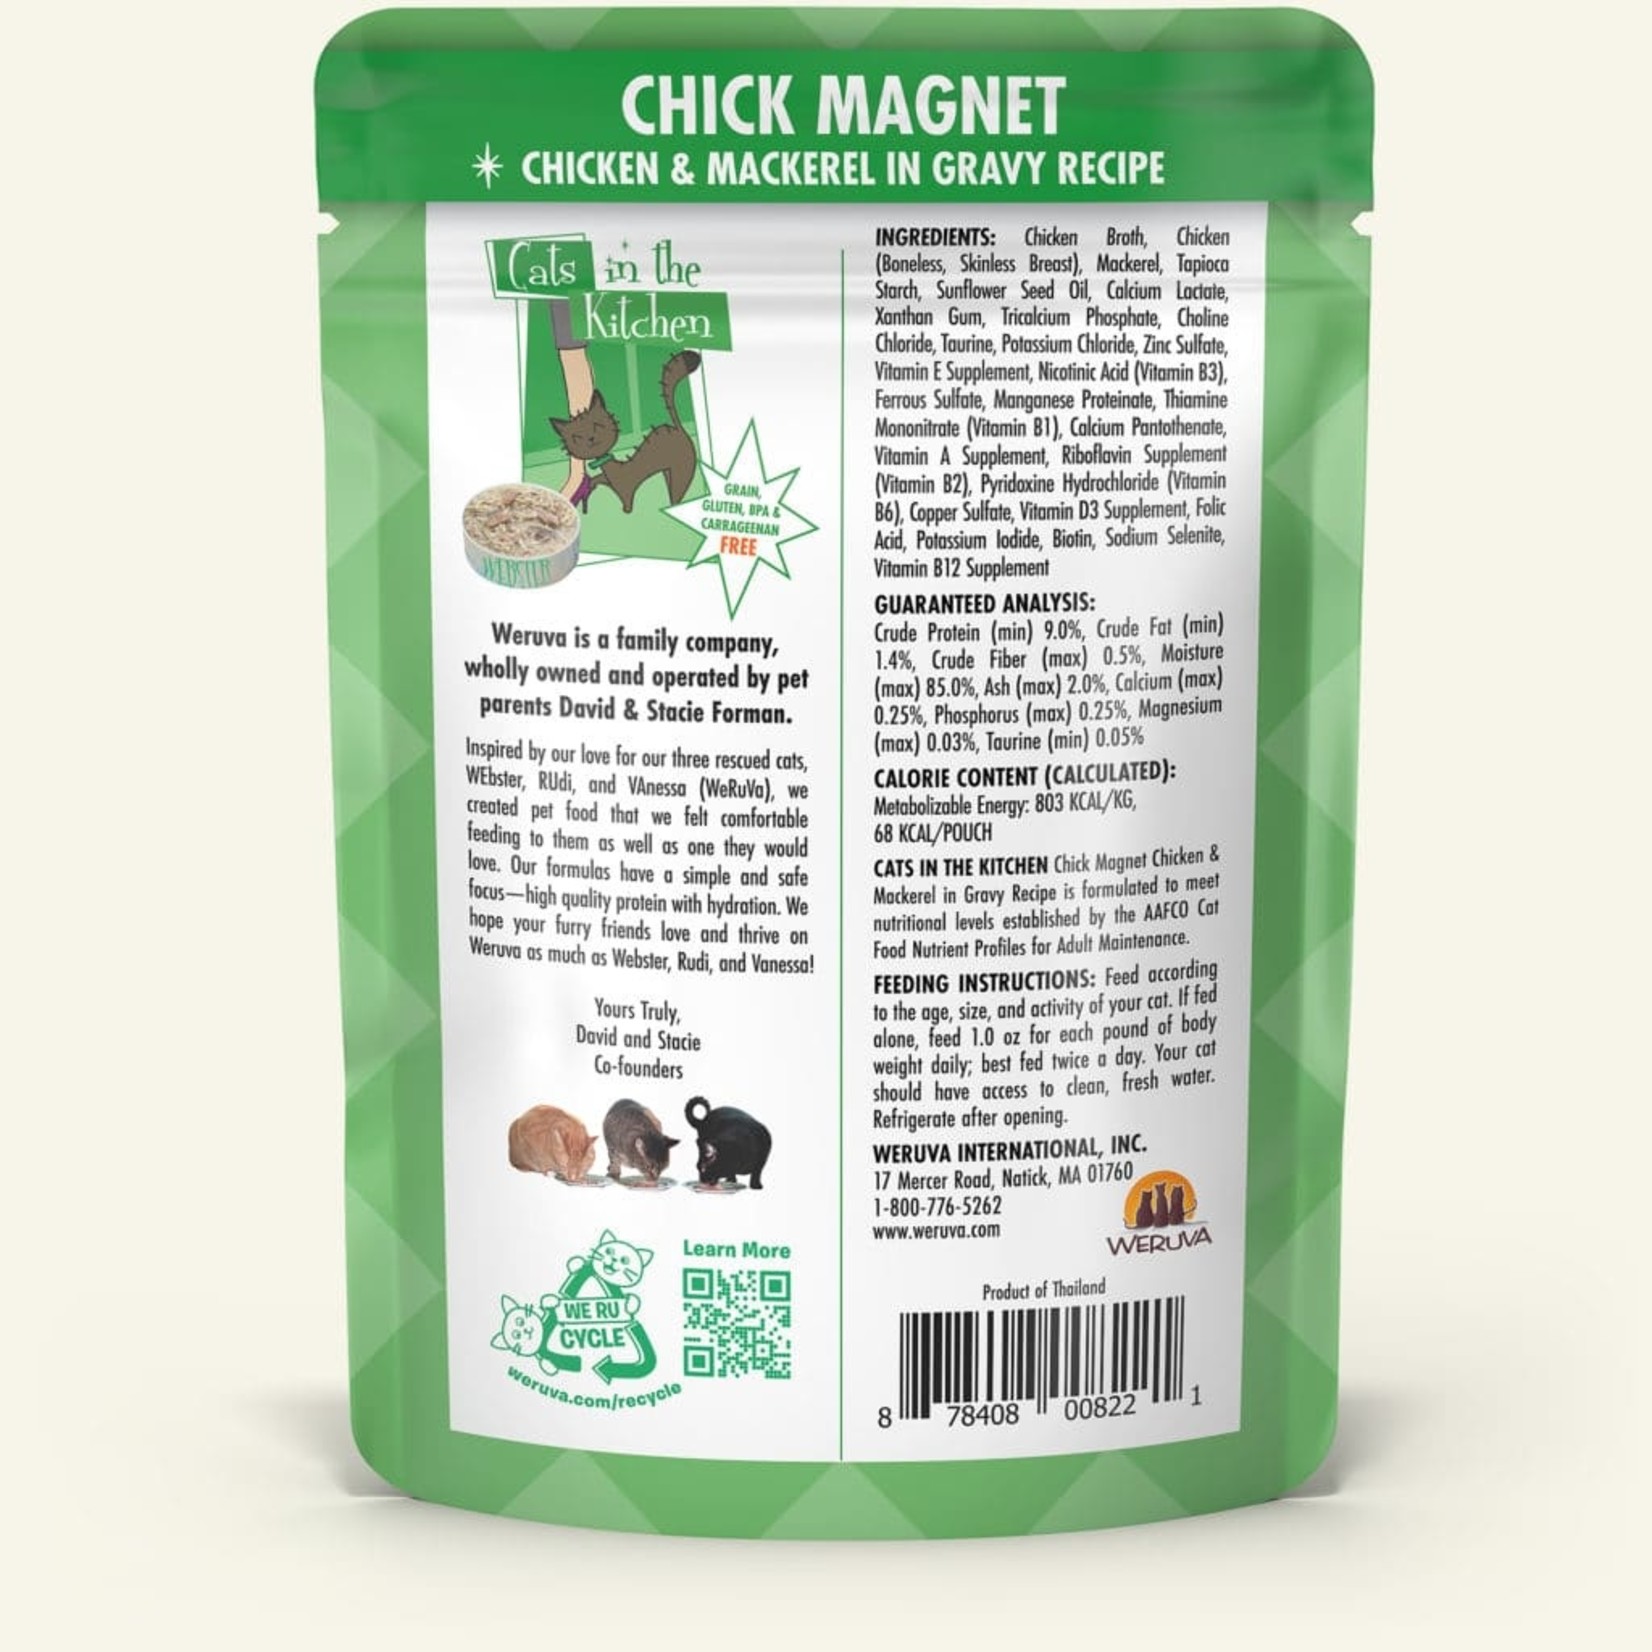 Weruva CITK Cat Chick Magnet, Chicken & Mackerel in Gravy 3oz Pouch